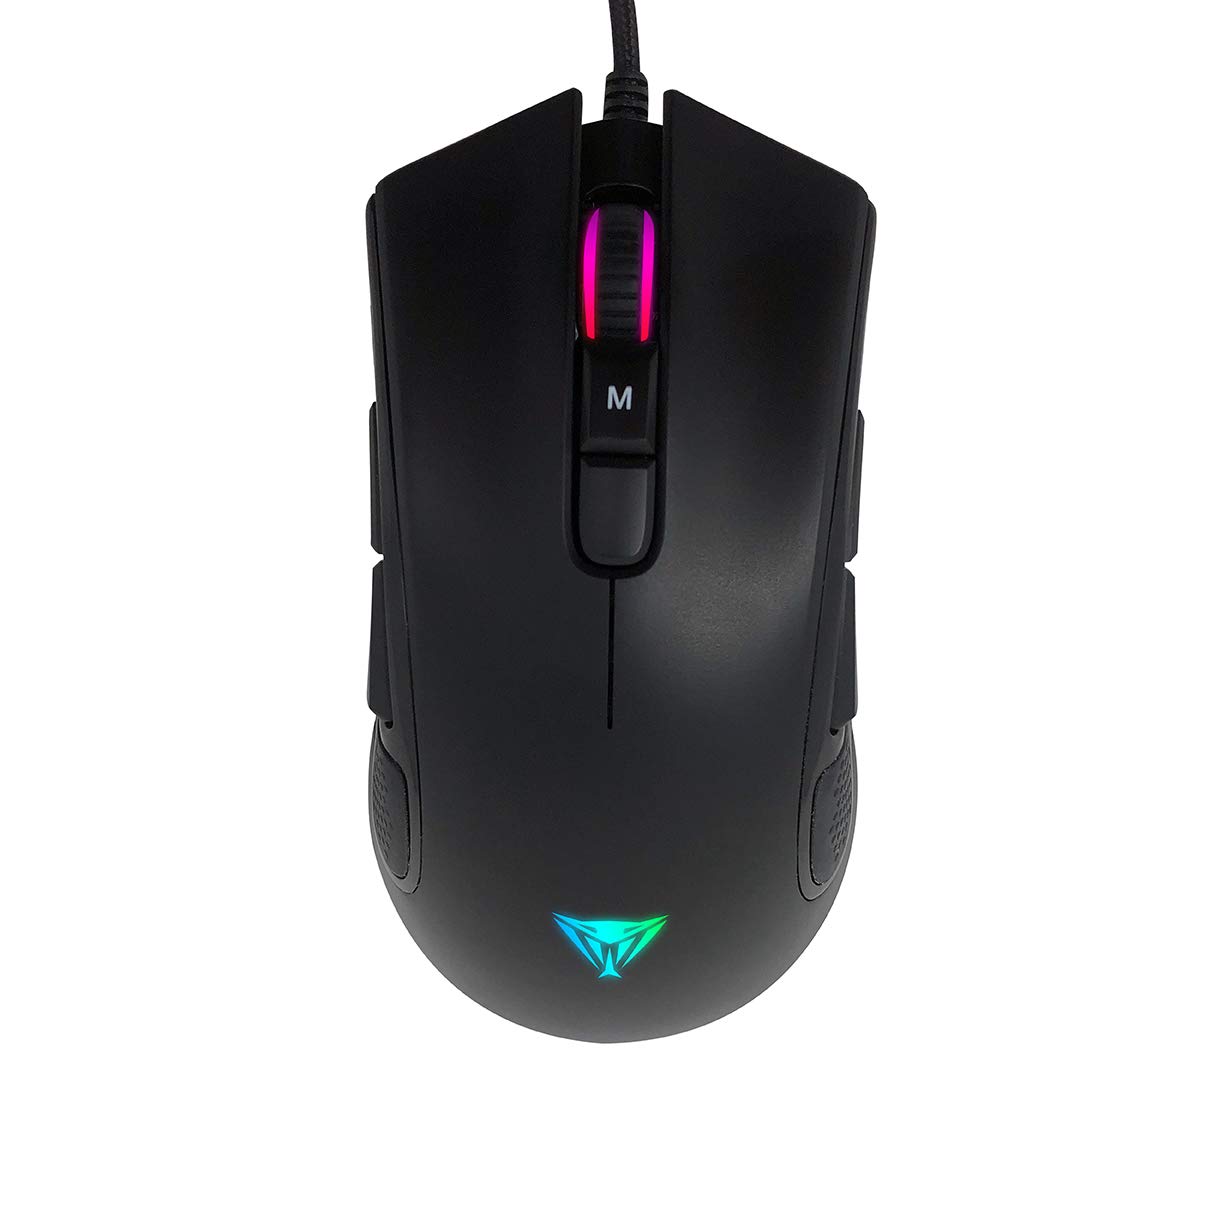 Patriot Viper V550 RGB Gaming Maus, 10000 DPI Optischer Sensor, RGB Beleuchtung, 8 Programmierbare Tasten, Voll anpassbar und für Rechts- und Linkshänder geeignet, 100 IPS Gaming Mouse für PC